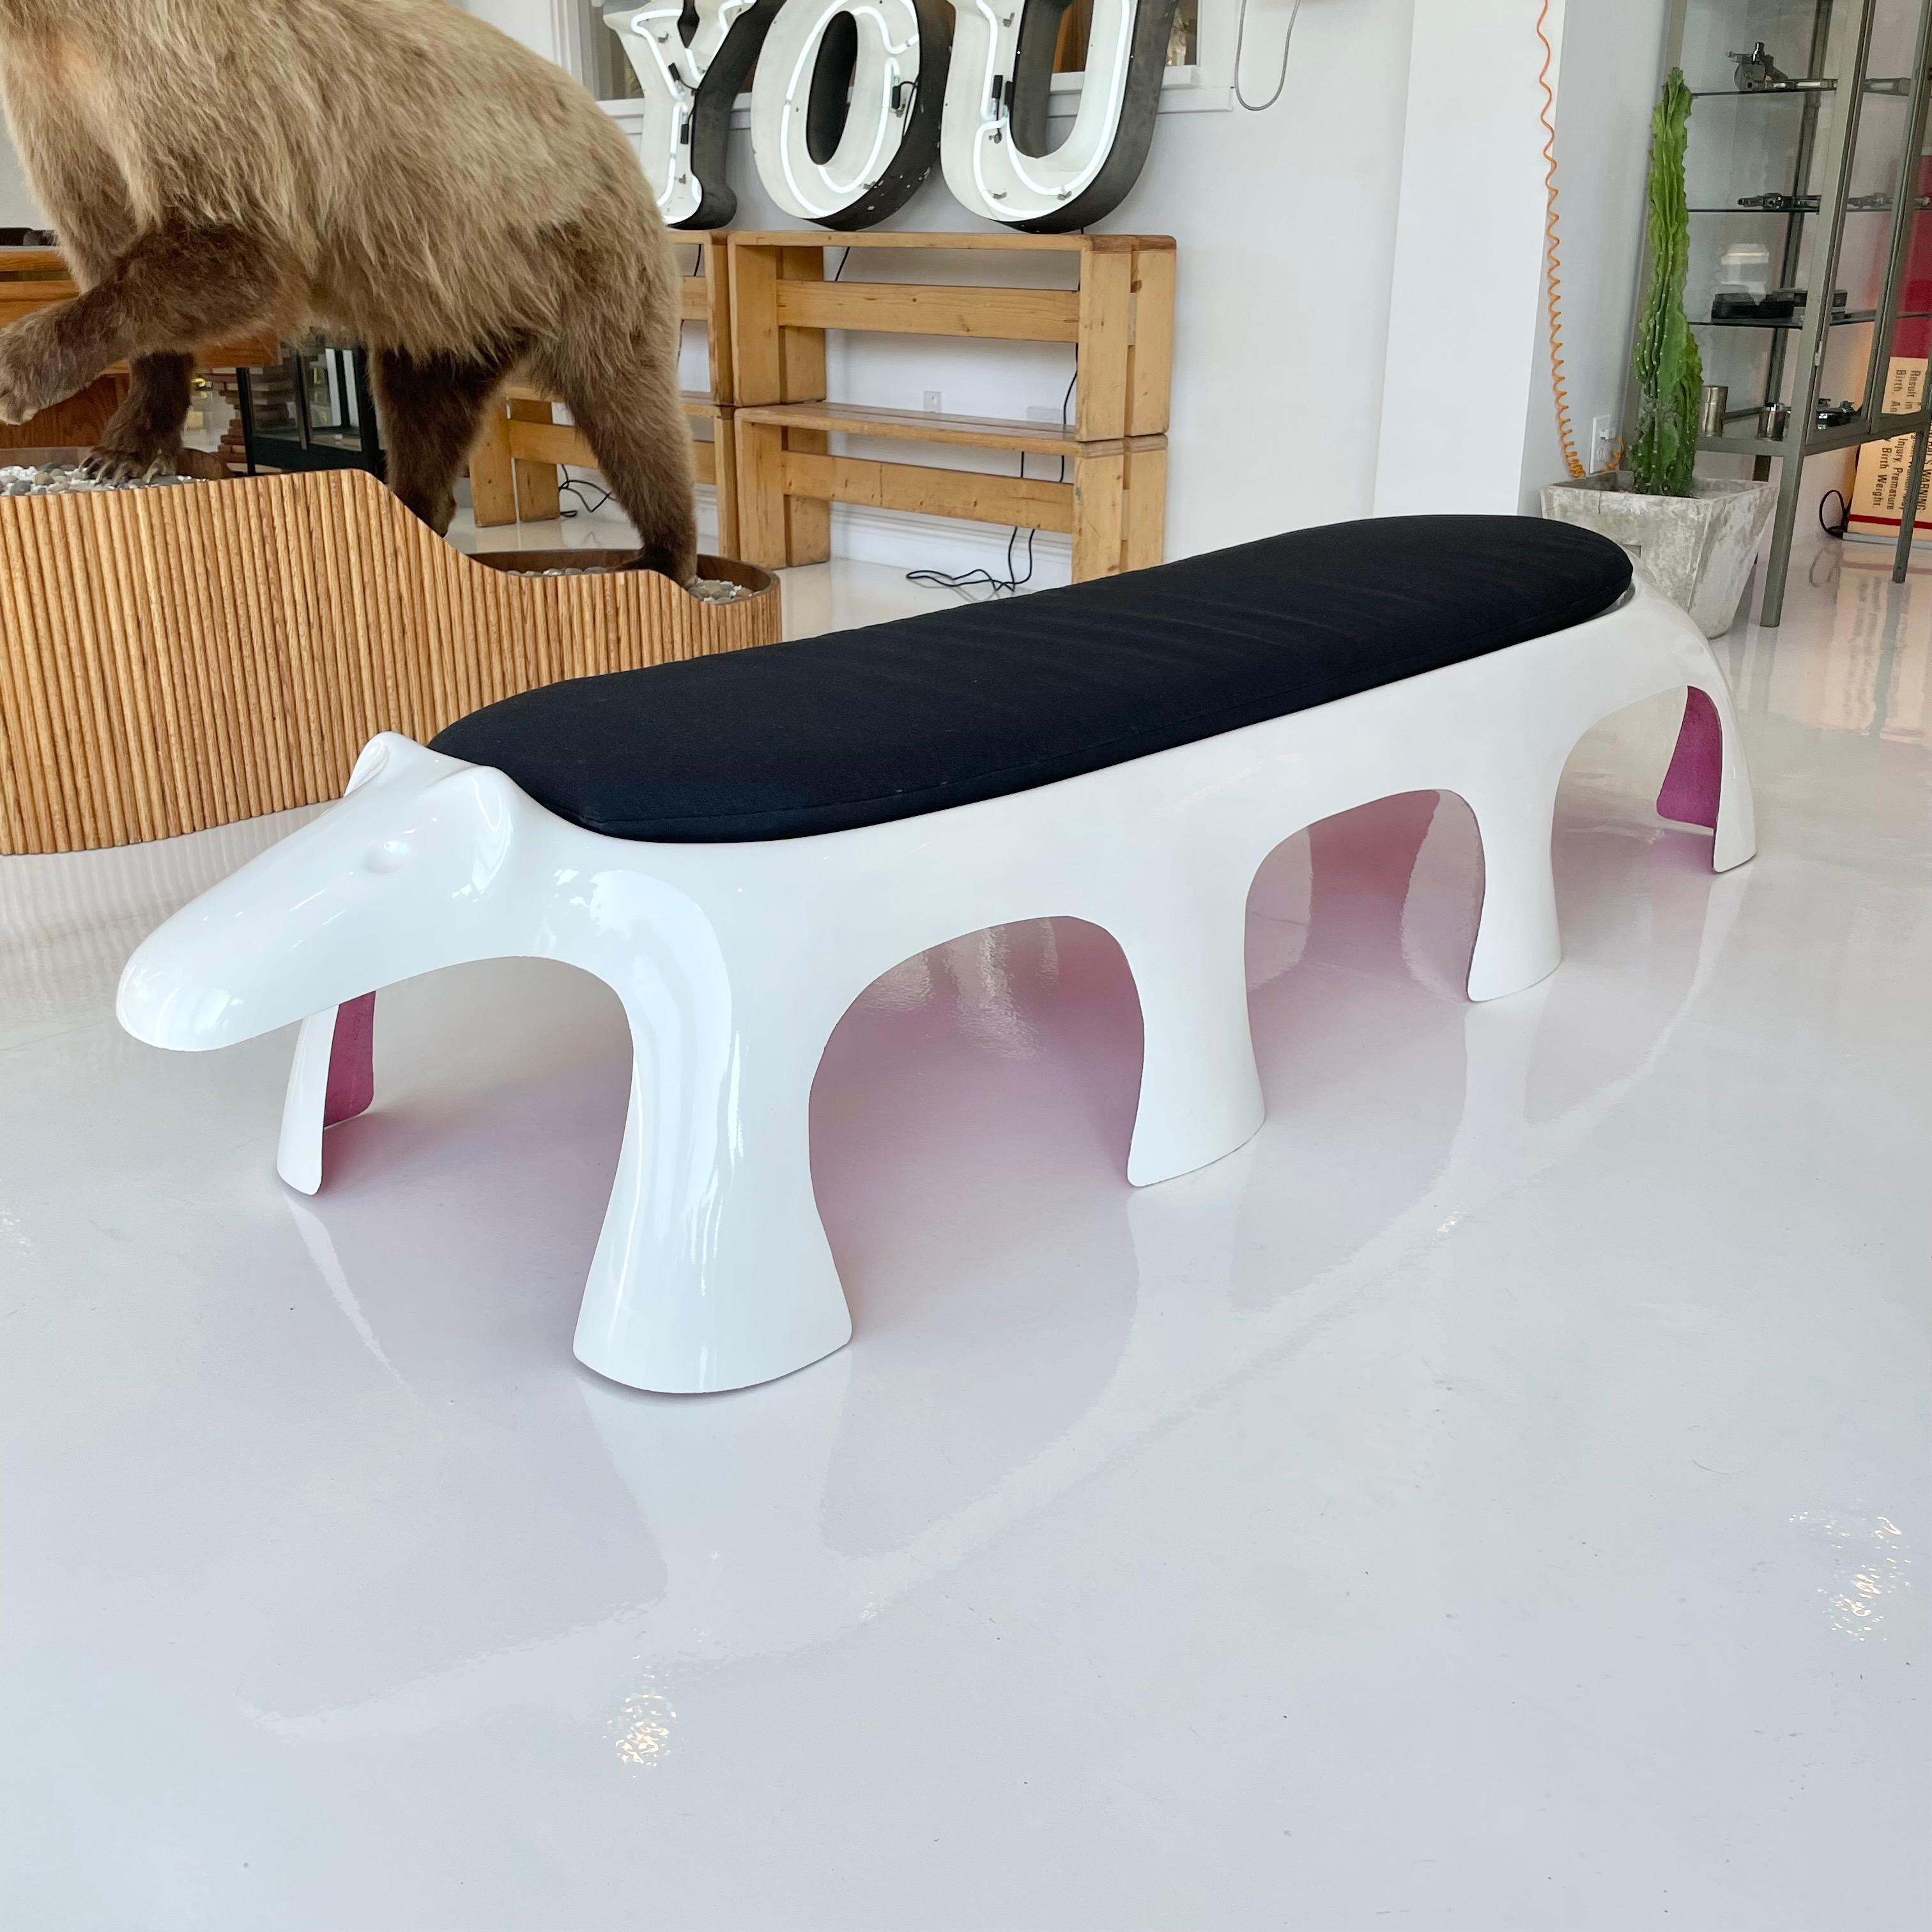 Monumentale Sitzbank aus Fiberglas in Form eines Erdferkels, hergestellt für Kotobuki Japan in den 1960er Jahren. Weiße Glasfaseraußenschale mit rosa Glasfaserunterseite. Neu angefertigtes Sitzkissen nach Maß. Fantastisches Stück Skulptur und